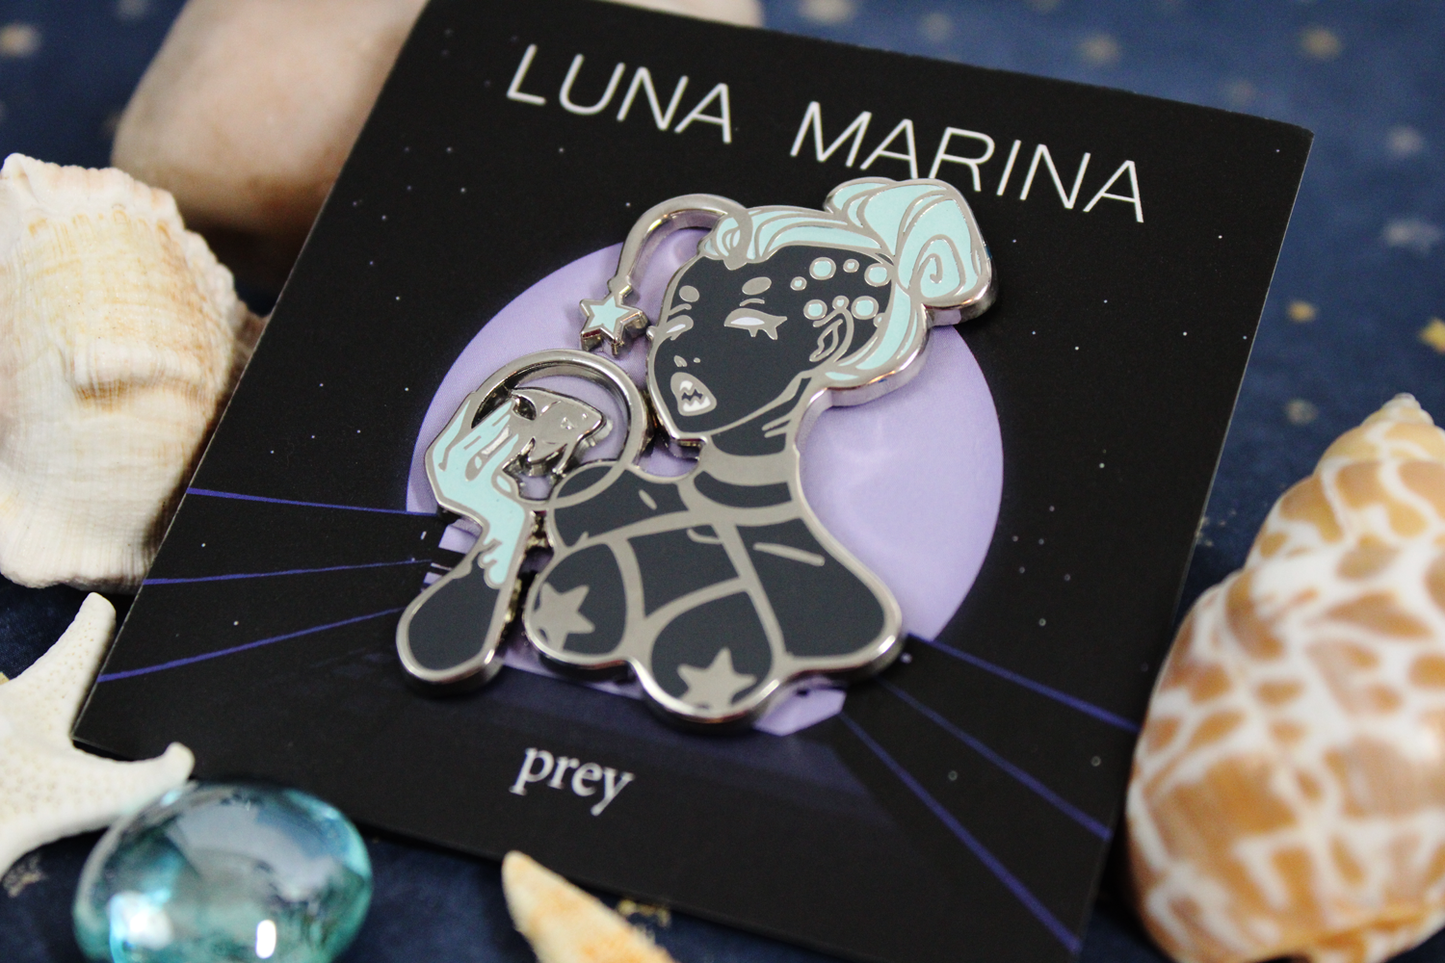 Prey | B GRADE|  Luna Marina